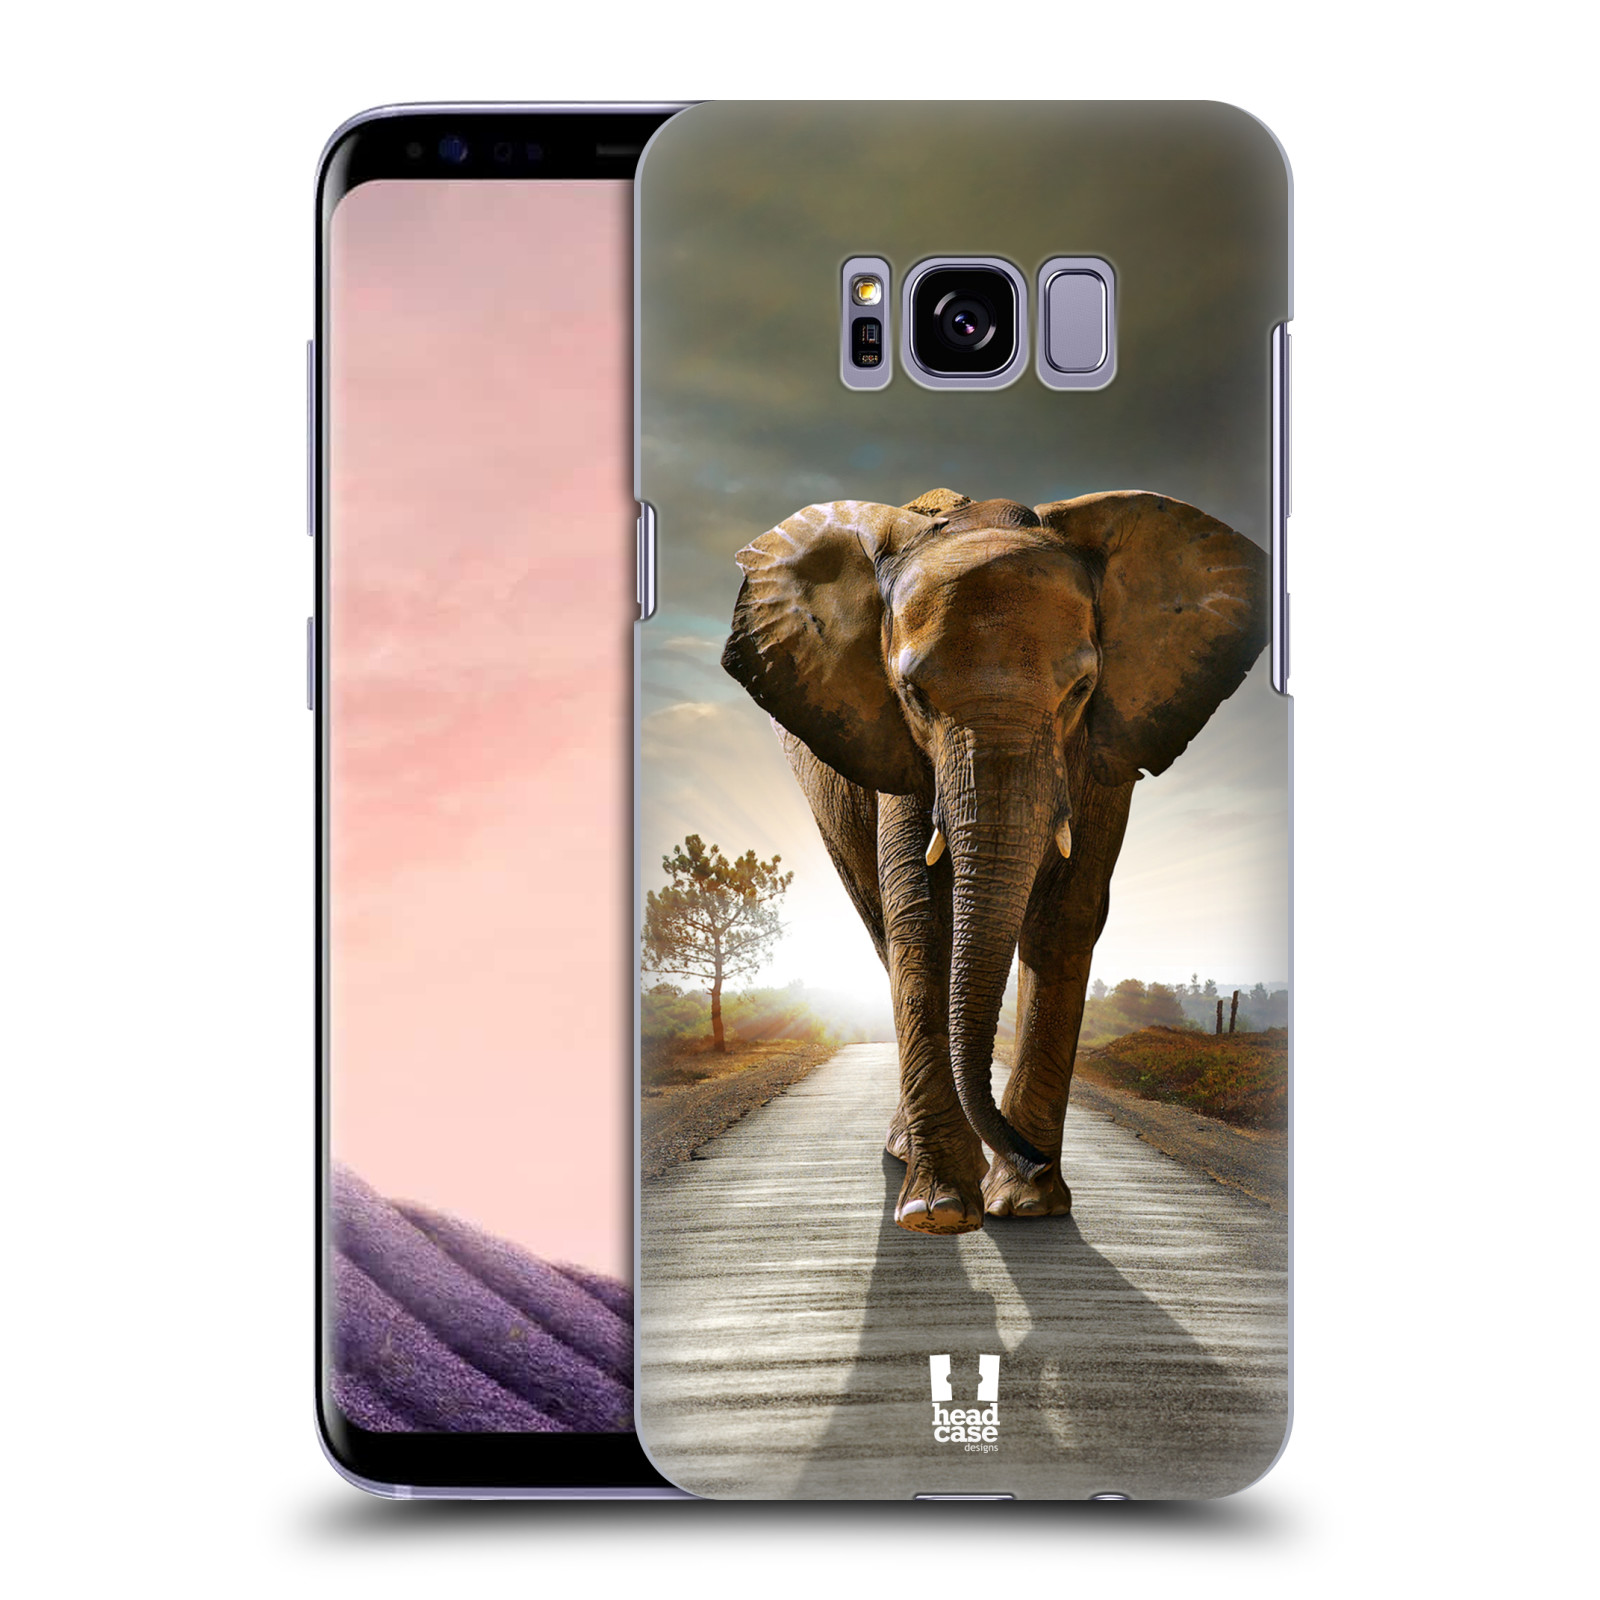 Zadní obal pro mobil Samsung Galaxy S8 PLUS - HEAD CASE - Svět zvířat kráčející slon